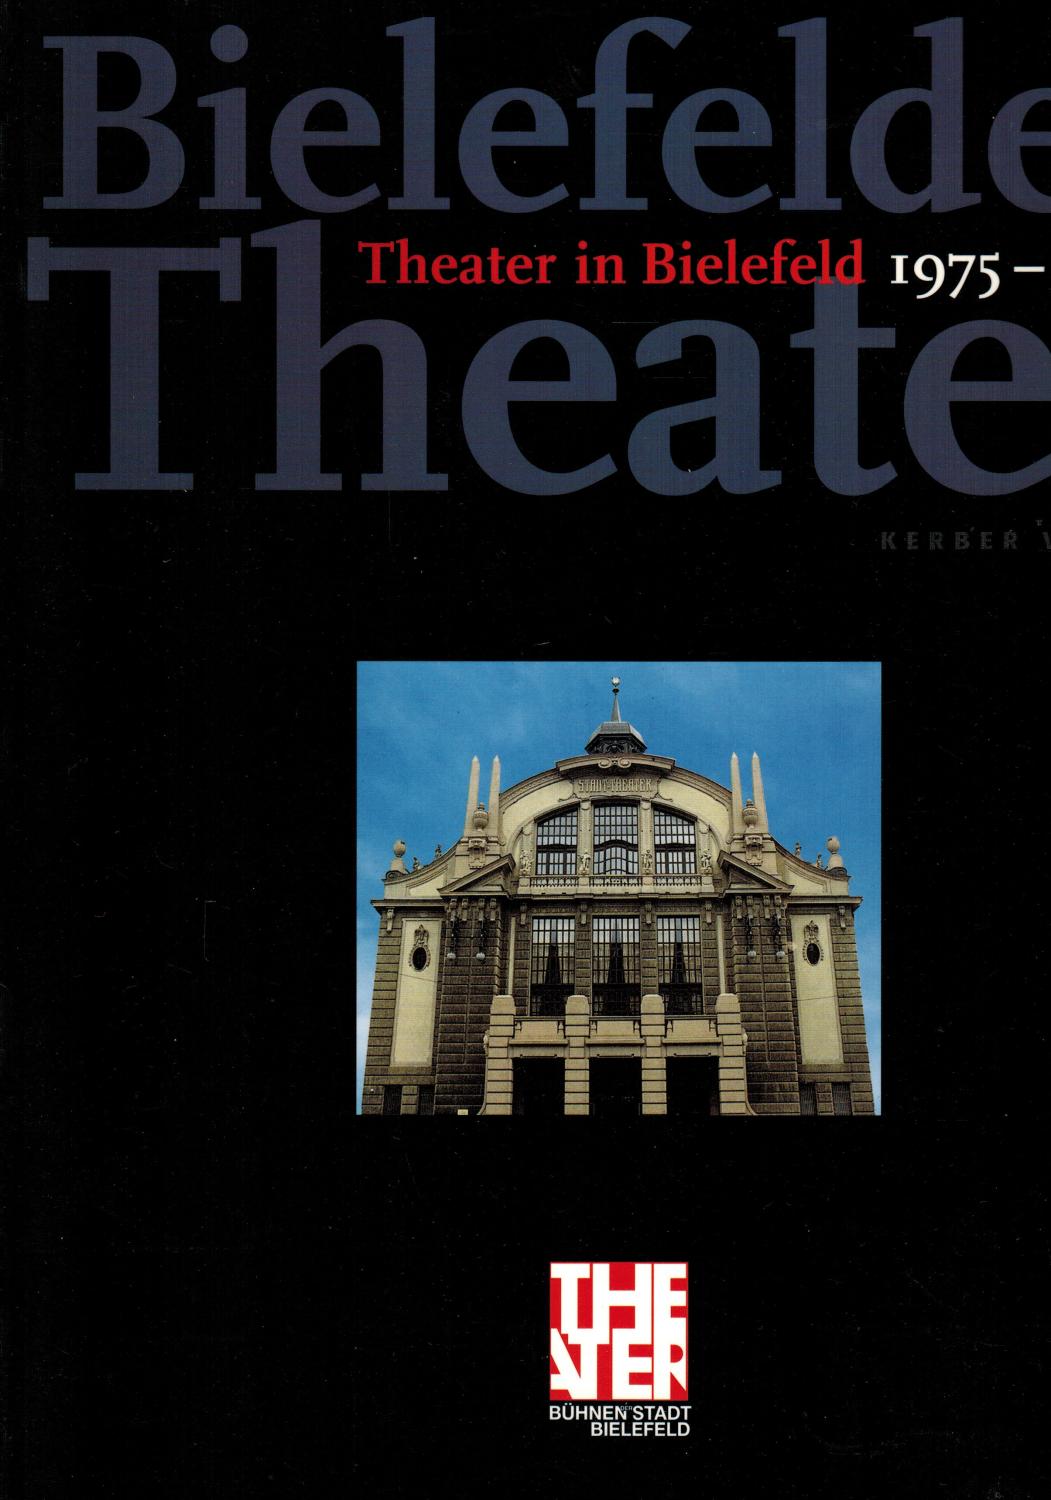 Bielefelder Theater (Theater in Bielefeld 1975 - 1998) - Bühnen der Stadt Bielefeld; Bruns, Heiner